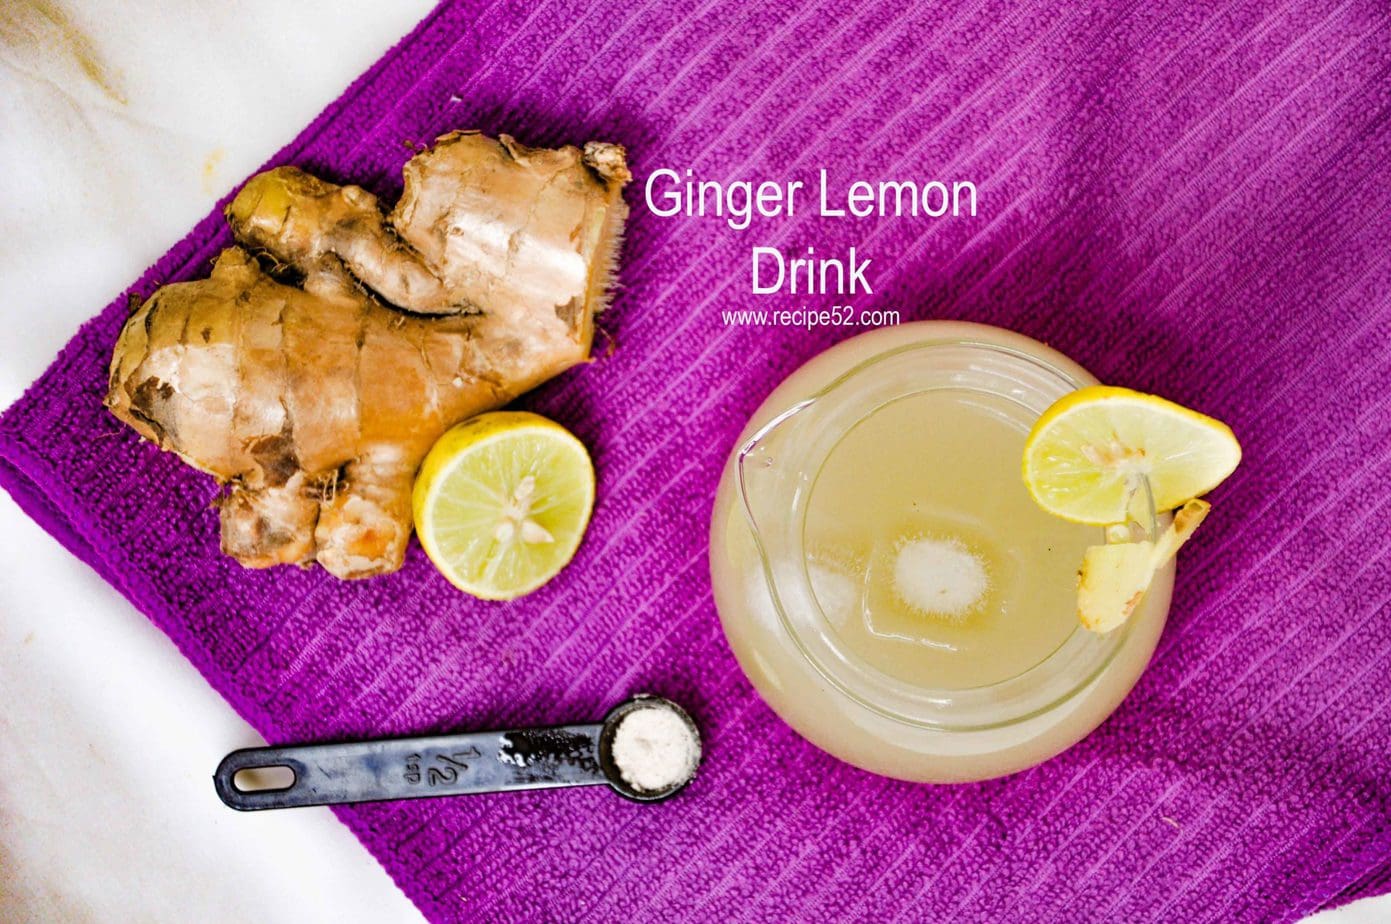 Ginger lemonade recipe with honey